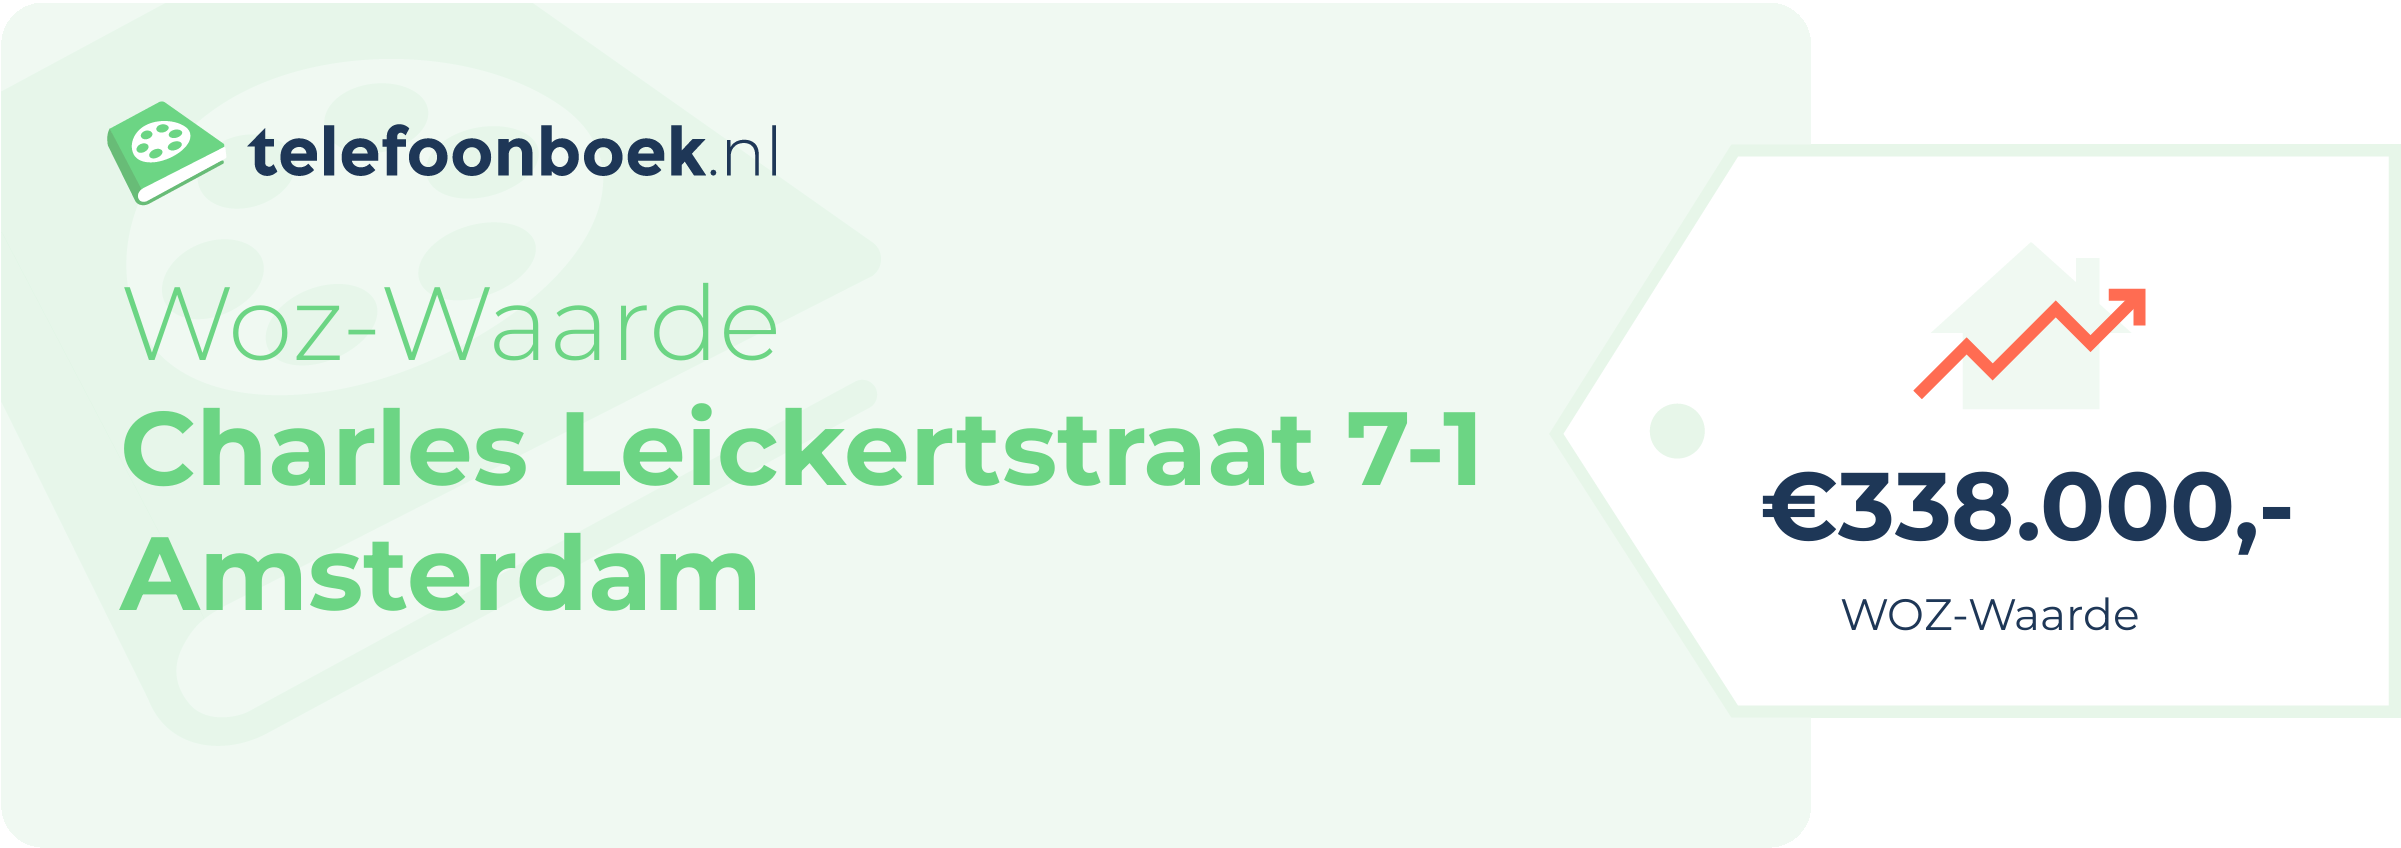 WOZ-waarde Charles Leickertstraat 7-1 Amsterdam